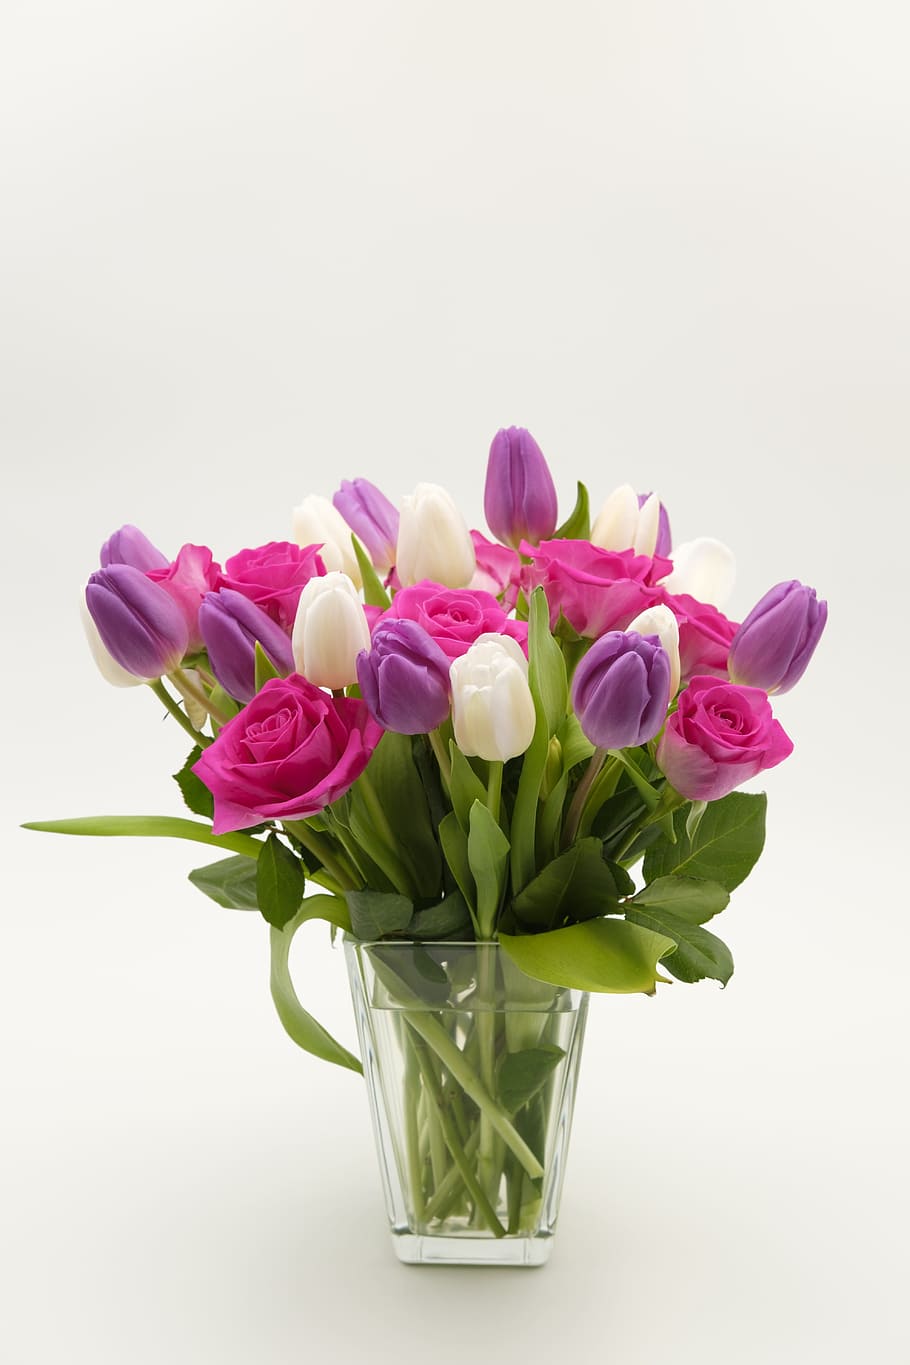 ピンク, 紫, 広い, 花びらのあるフラワーアレンジメント, 花束, バラの花束, チューリップの花束, バラ, チューリップ, 花